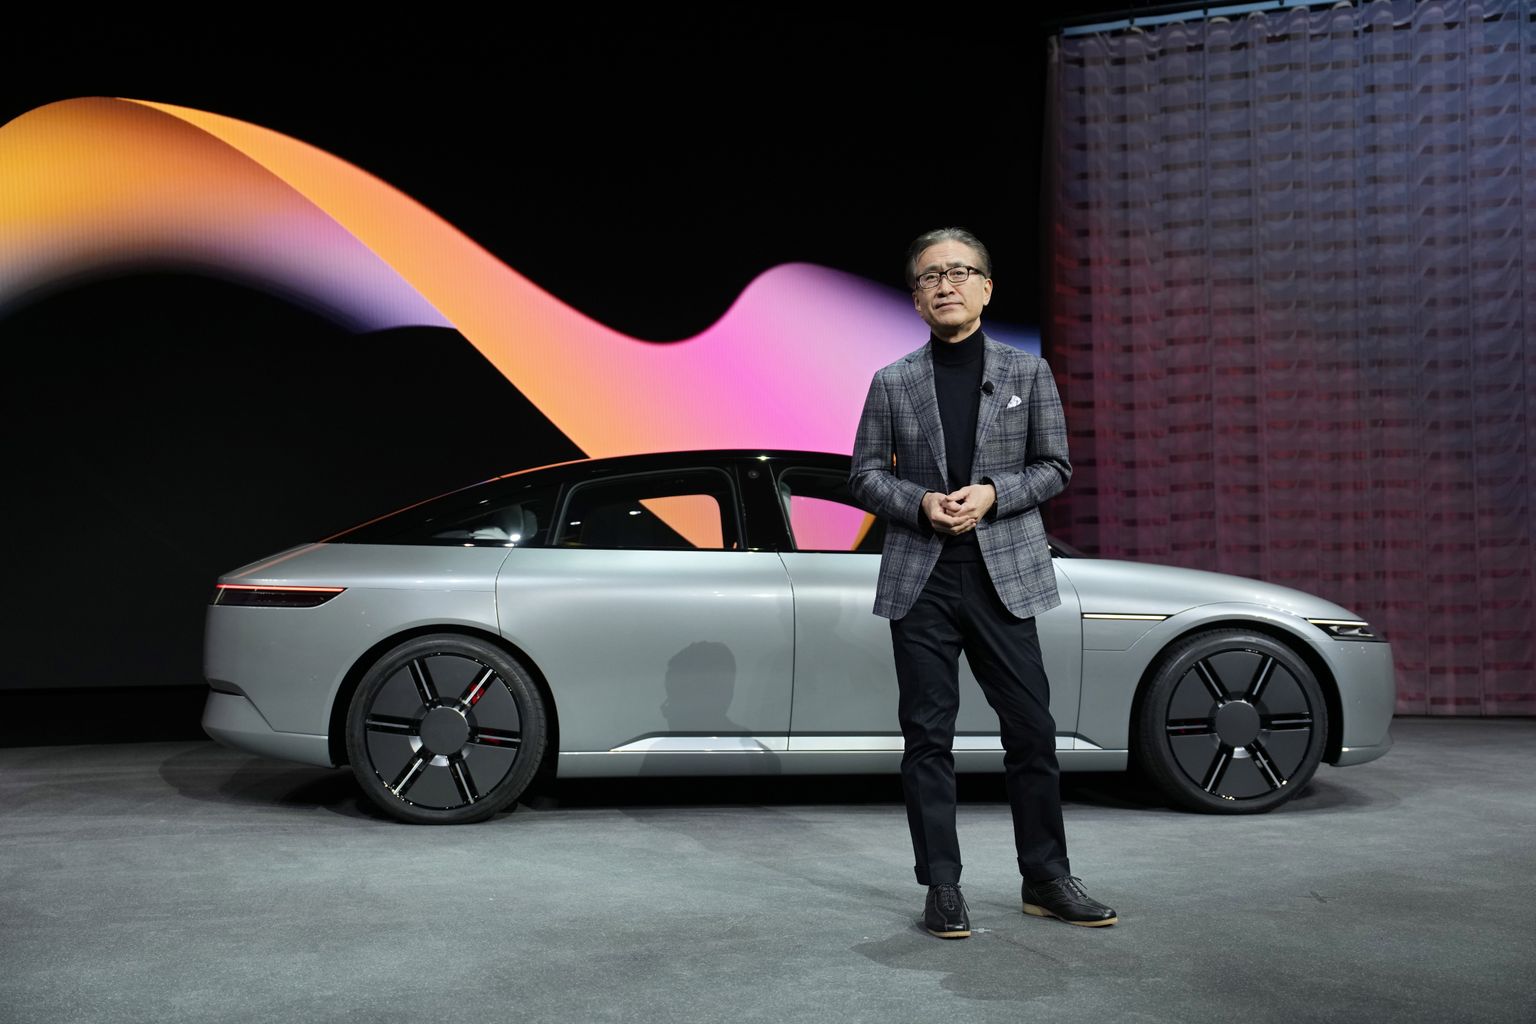 Sony Grupi tegevjuht Kenichiro Yoshida astus esimest korda CES-i lavale Sony ja Honda koostöös valminud elektriauto Afeela prototüübiga. Sellised isejuhtivad liikurid jõuavad teedele 2026. aastal.